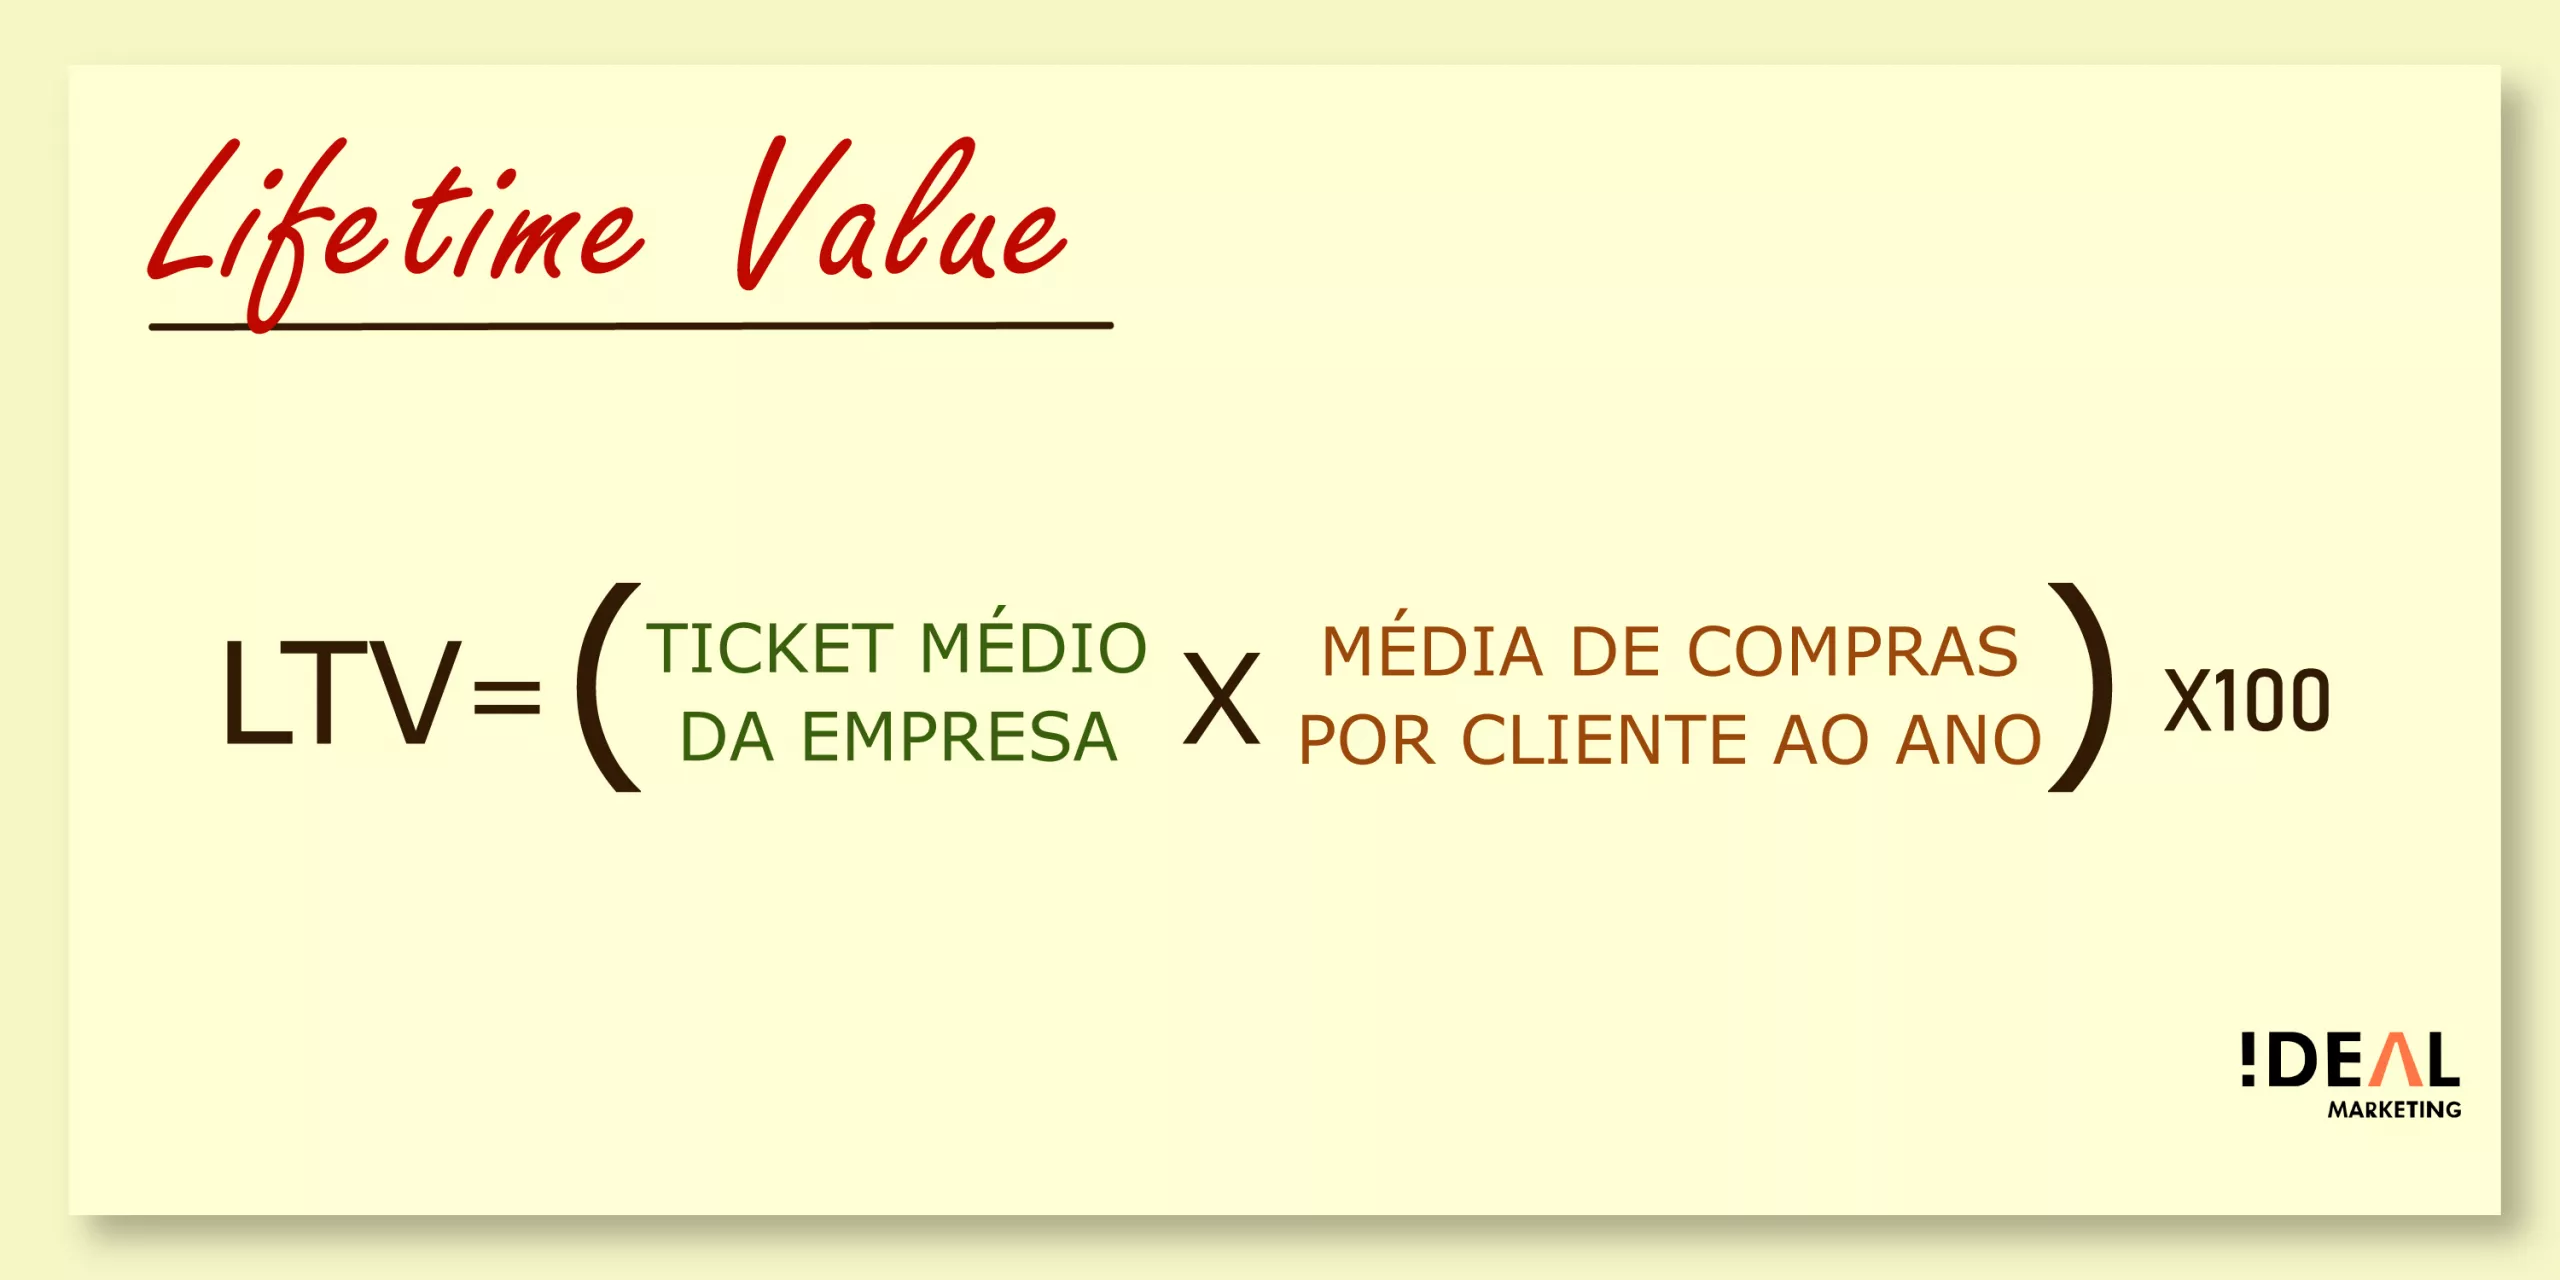 A arte mostra a fórmula do Lifetime Valiue (LTV): LTV=Ticket médio da empresa x Média de compras por cliente ao ano) x100.